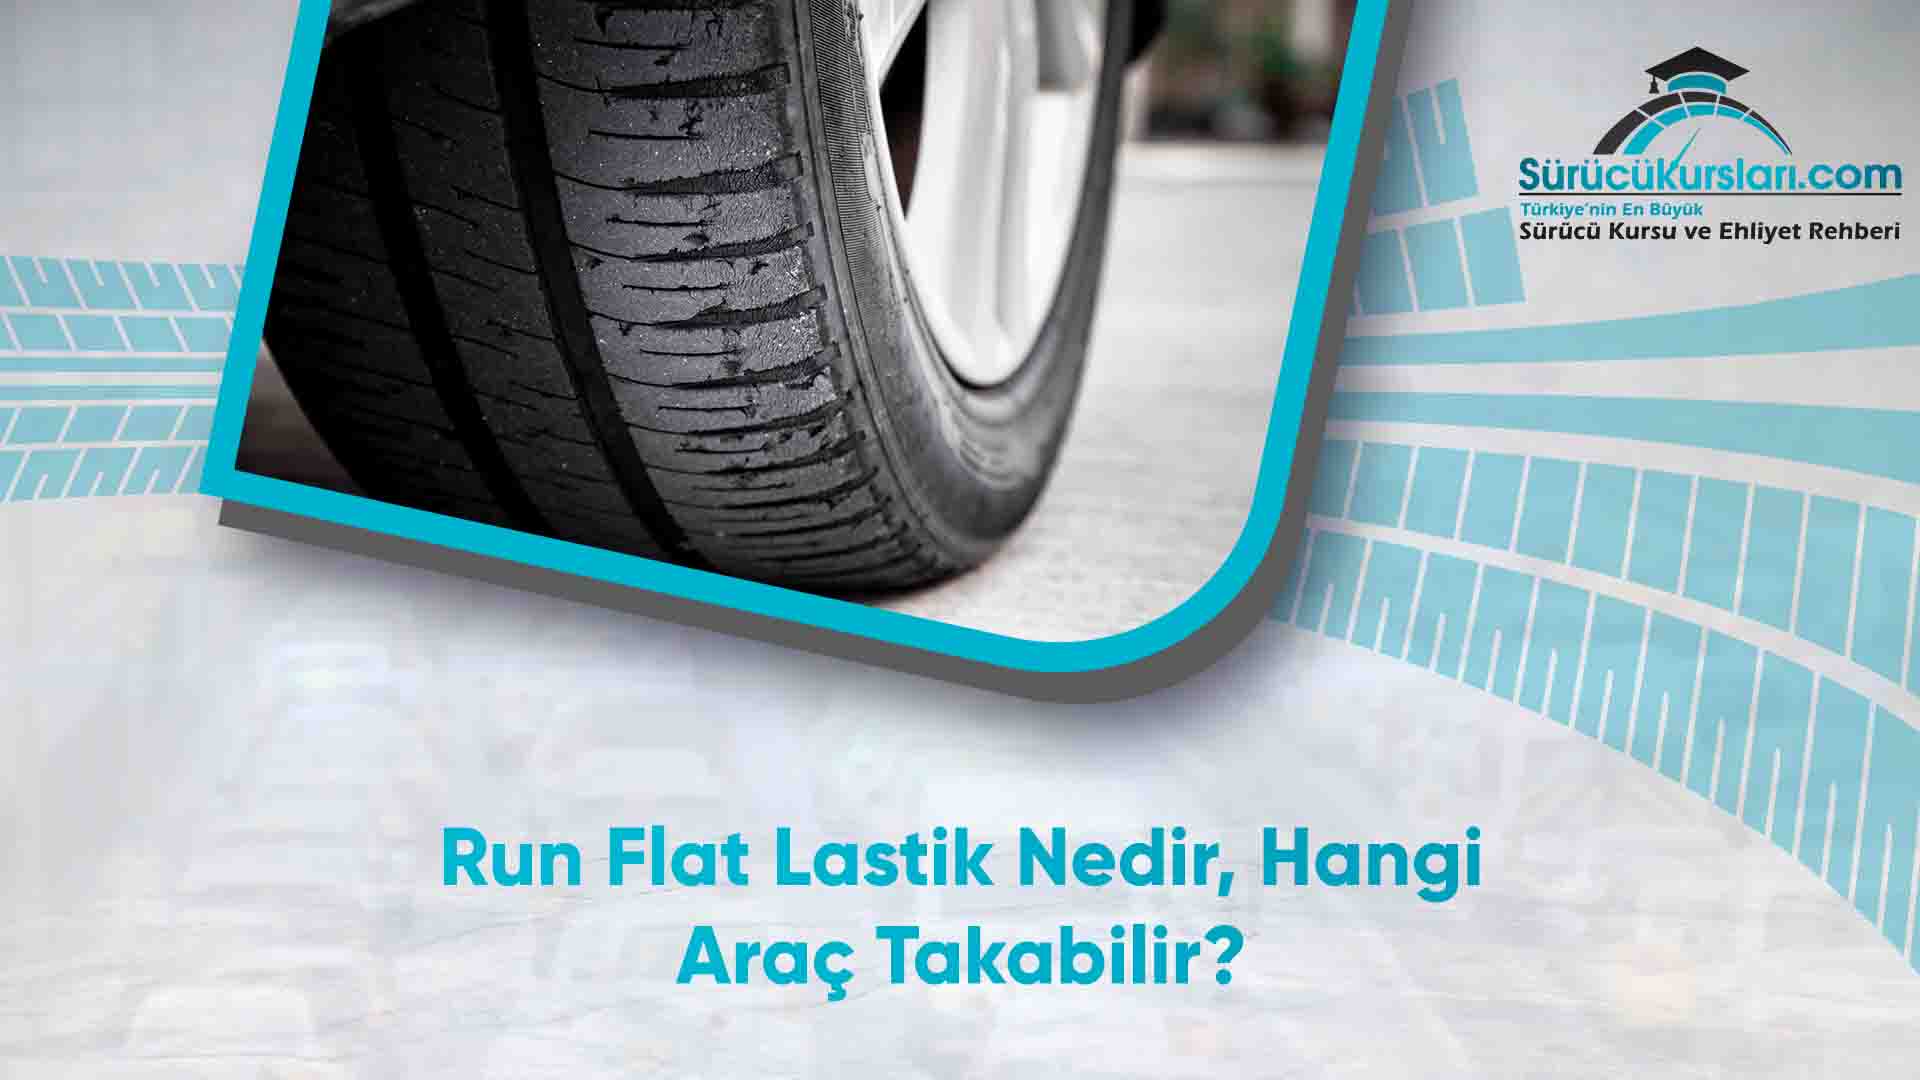 Run Flat Lastik Nedir - Hangi Araç Takabilir